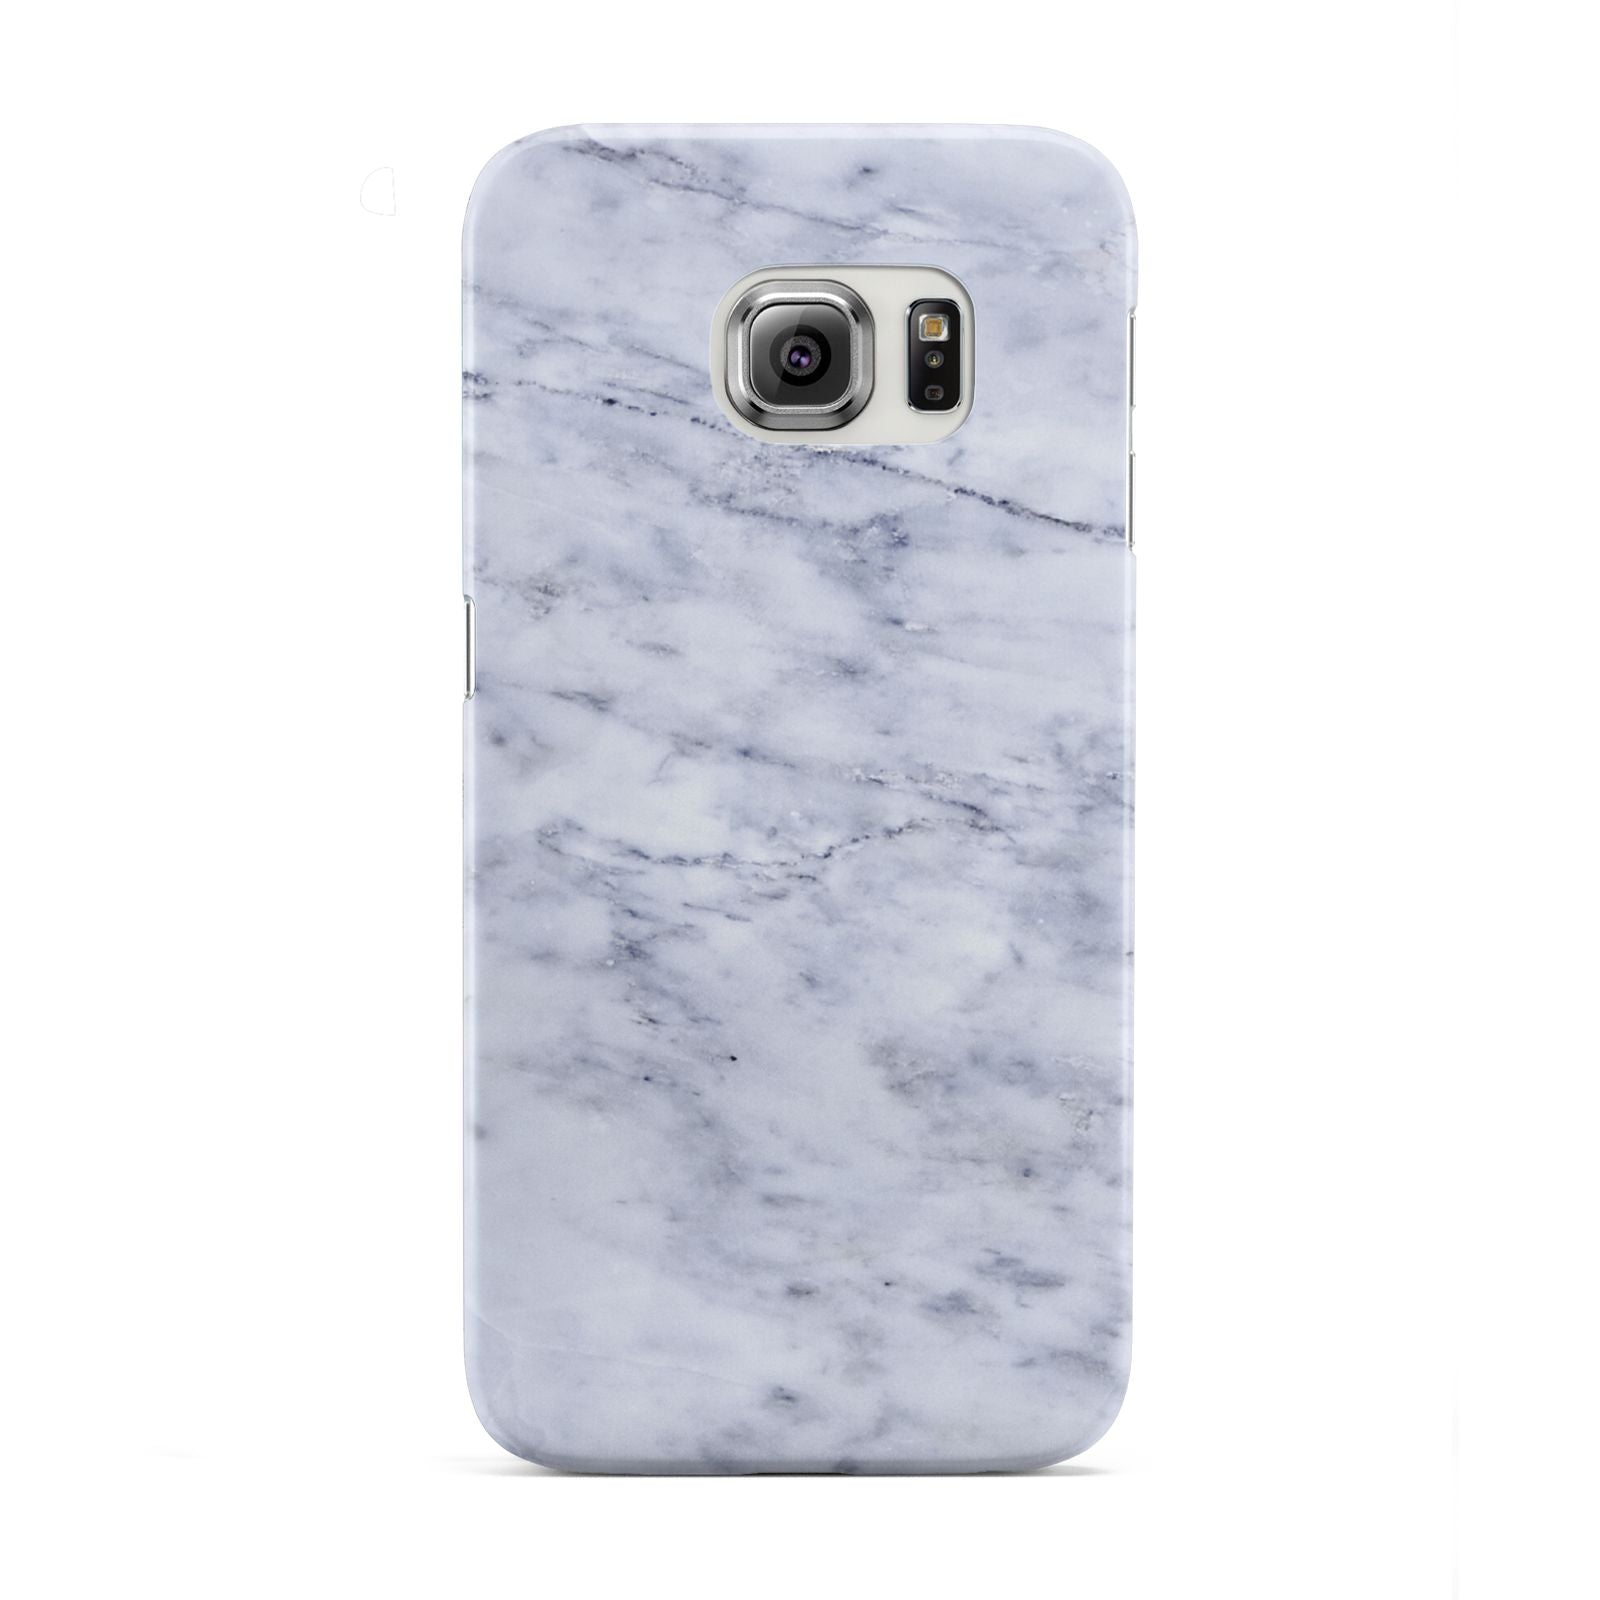 Faux Carrara Marble Print Samsung Galaxy S6 Edge Case